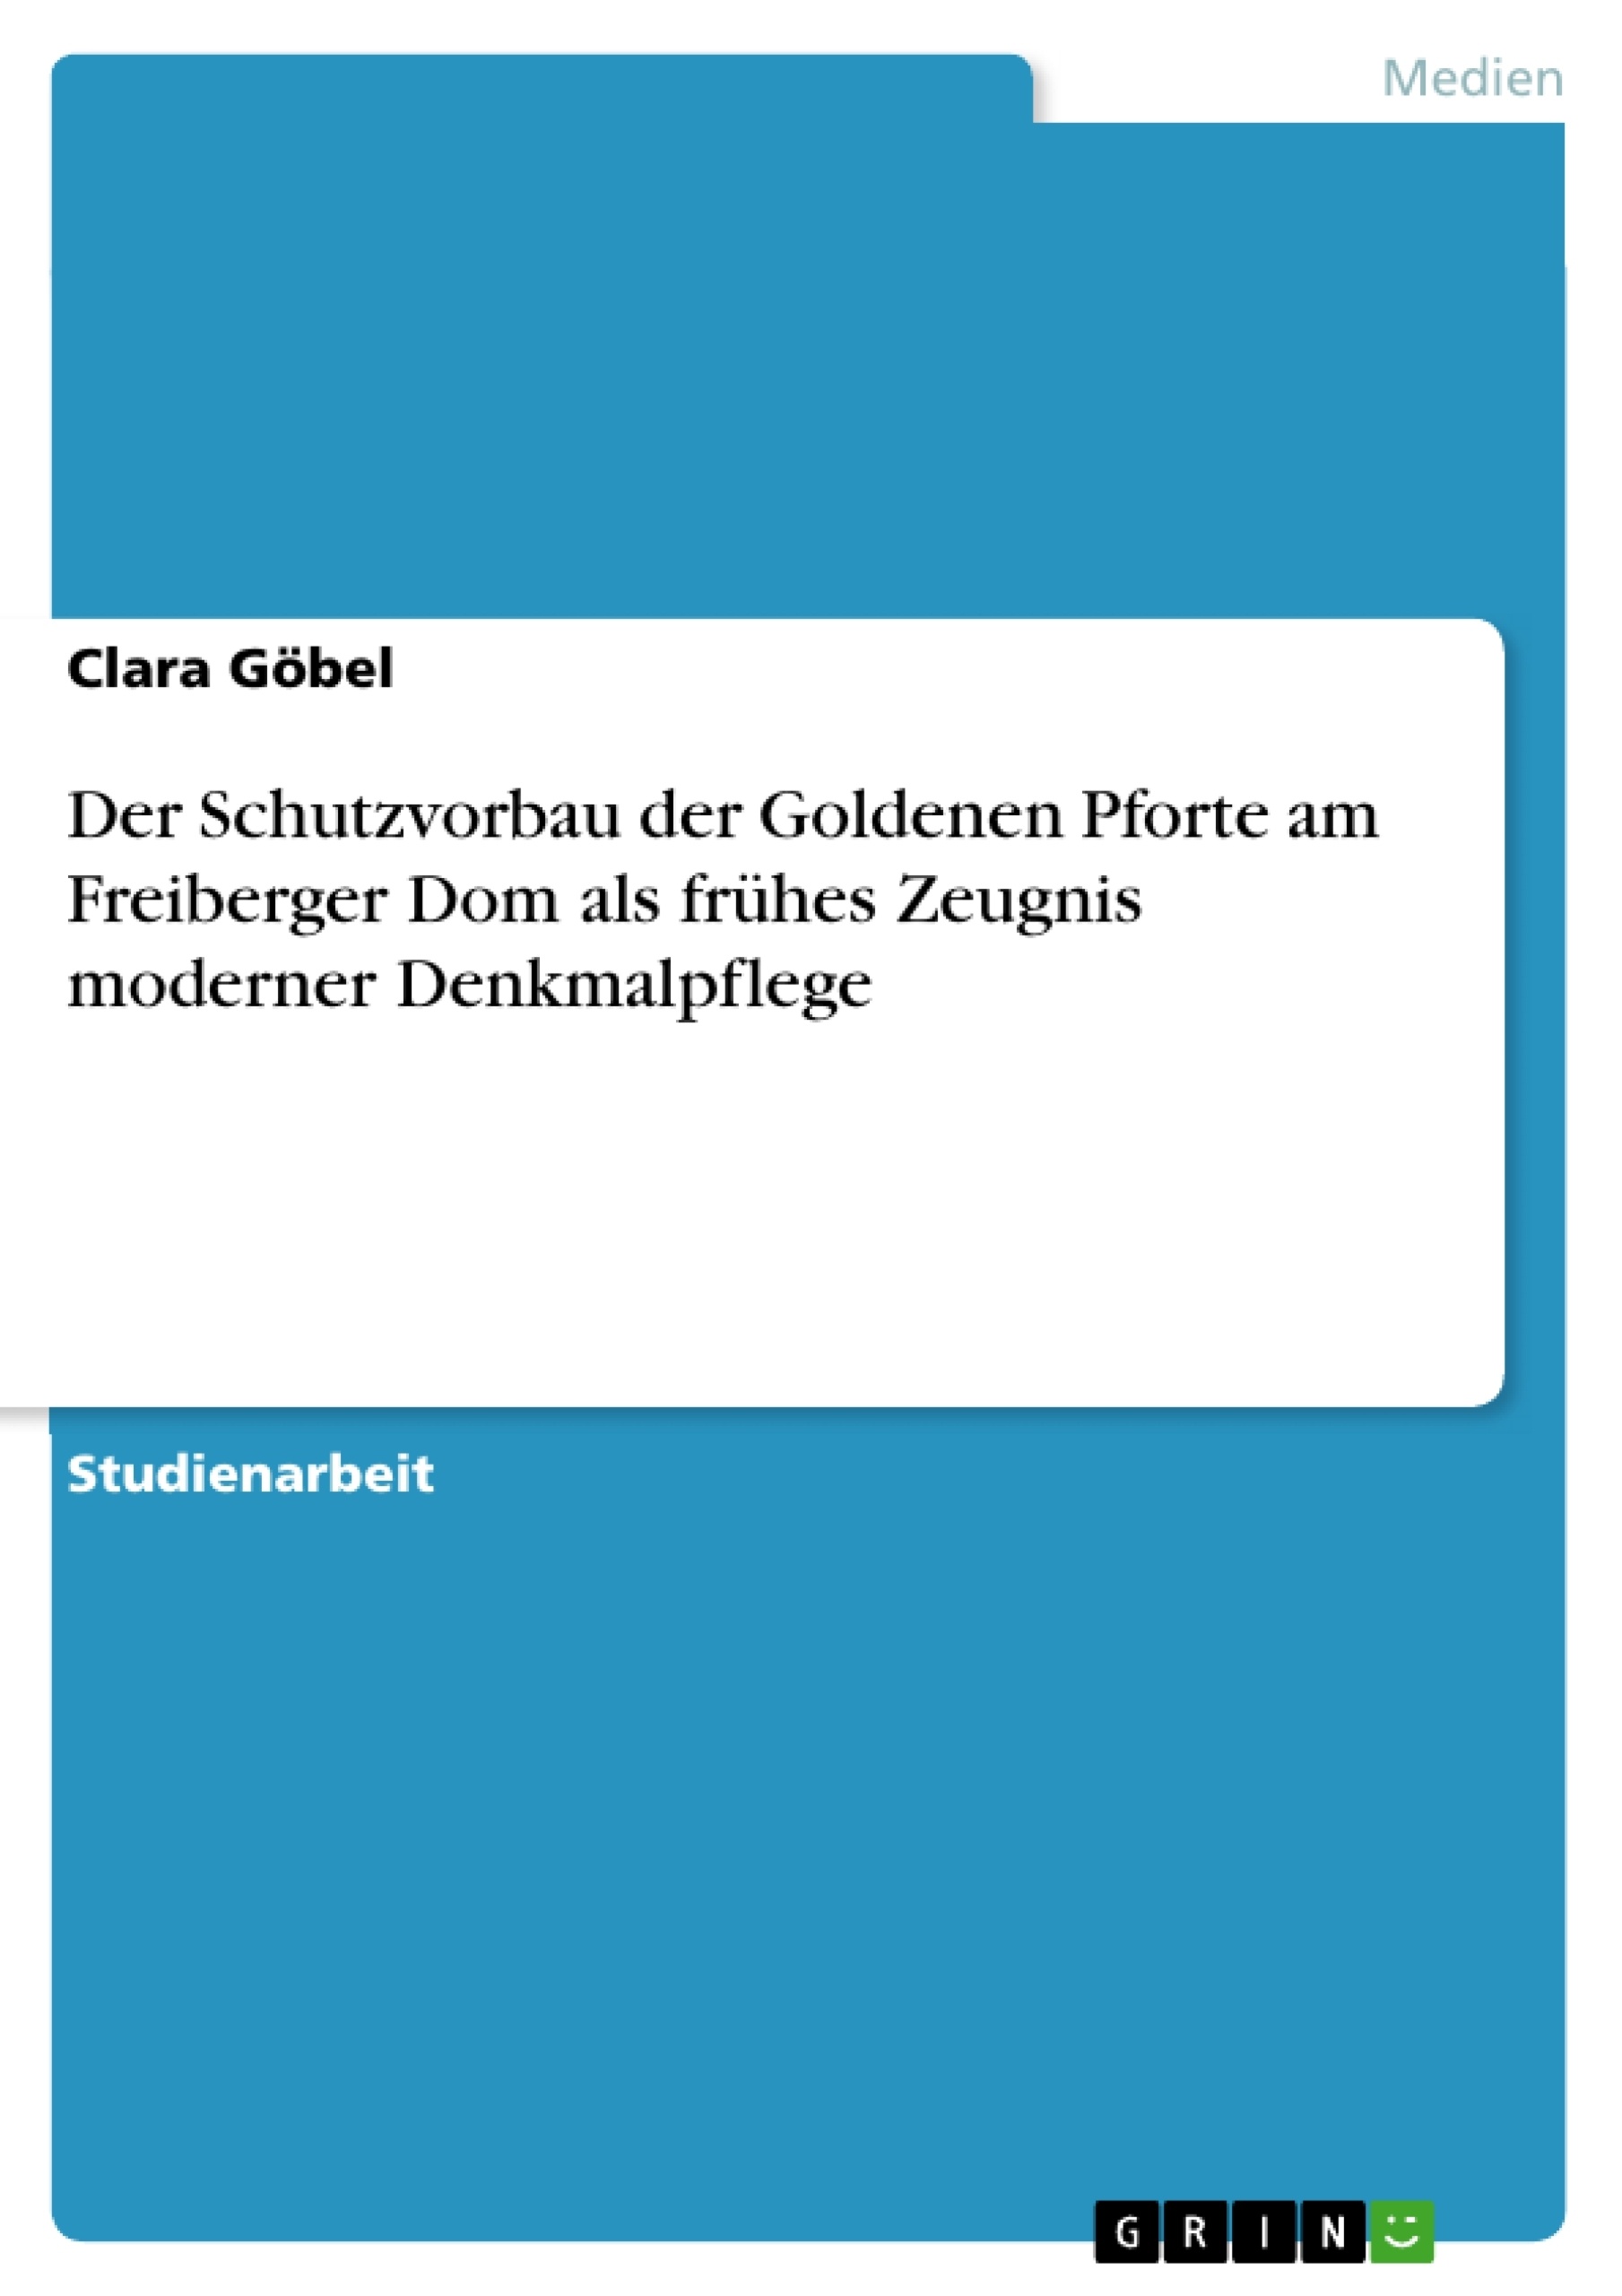 Titre: Der Schutzvorbau der Goldenen Pforte am Freiberger Dom als frühes Zeugnis moderner Denkmalpflege